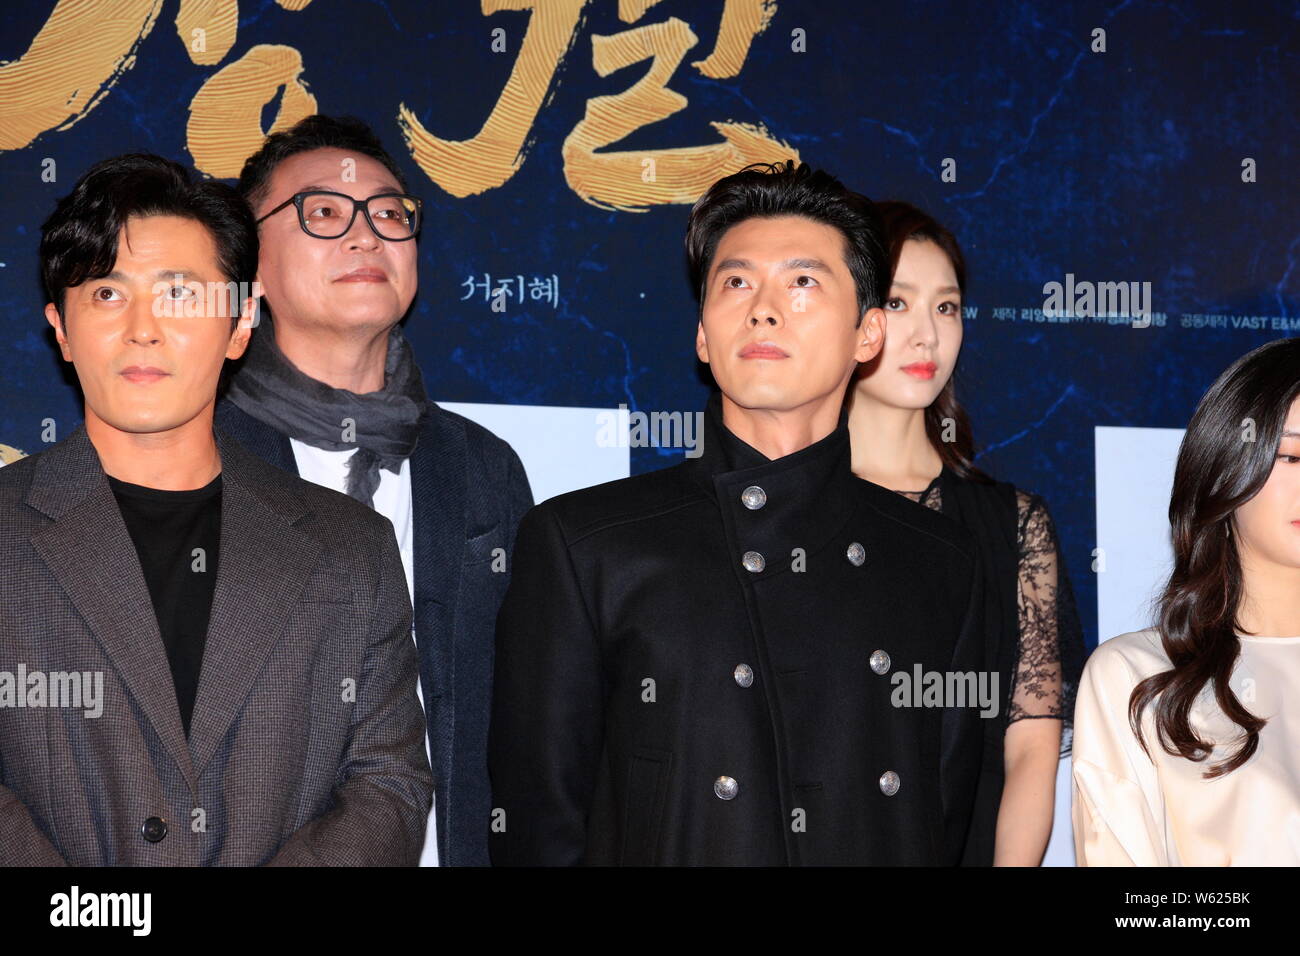 Acteurs sud-coréens Hyun Bin, droite, et Jang Dong-gun pour assister à une conférence de presse nouveau film 'La' à Séoul, Corée du Sud, le 18 octobre 2018. Banque D'Images